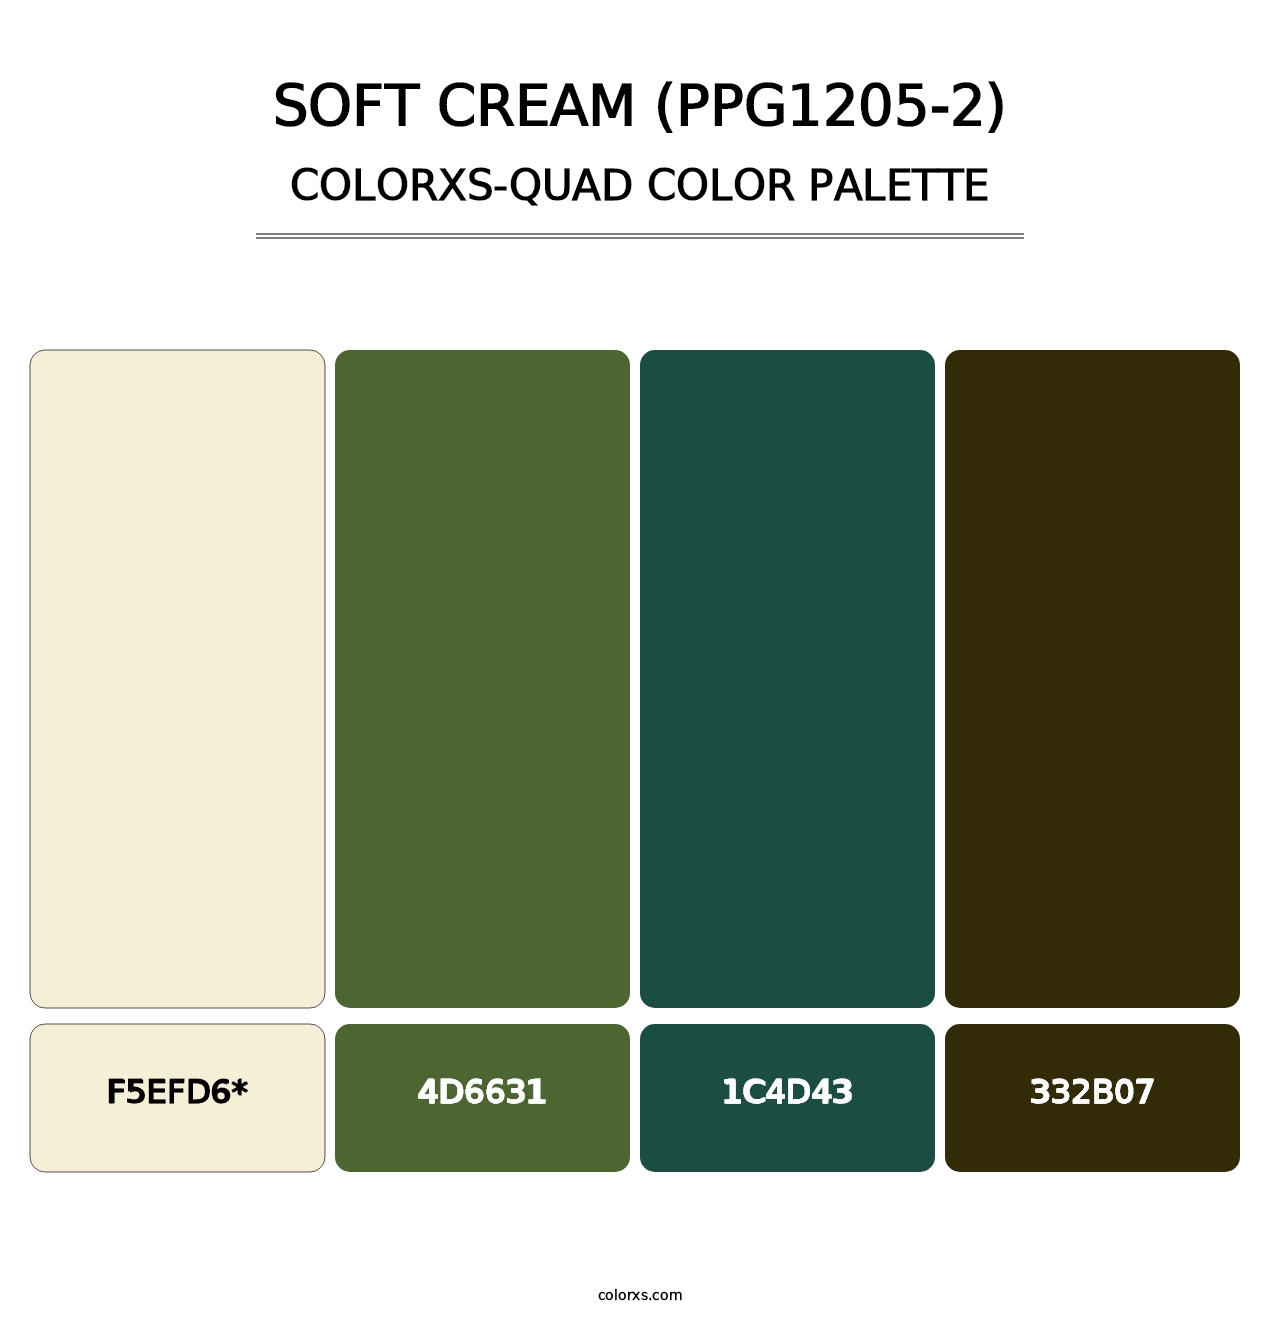 Soft Cream (PPG1205-2) - Colorxs Quad Palette